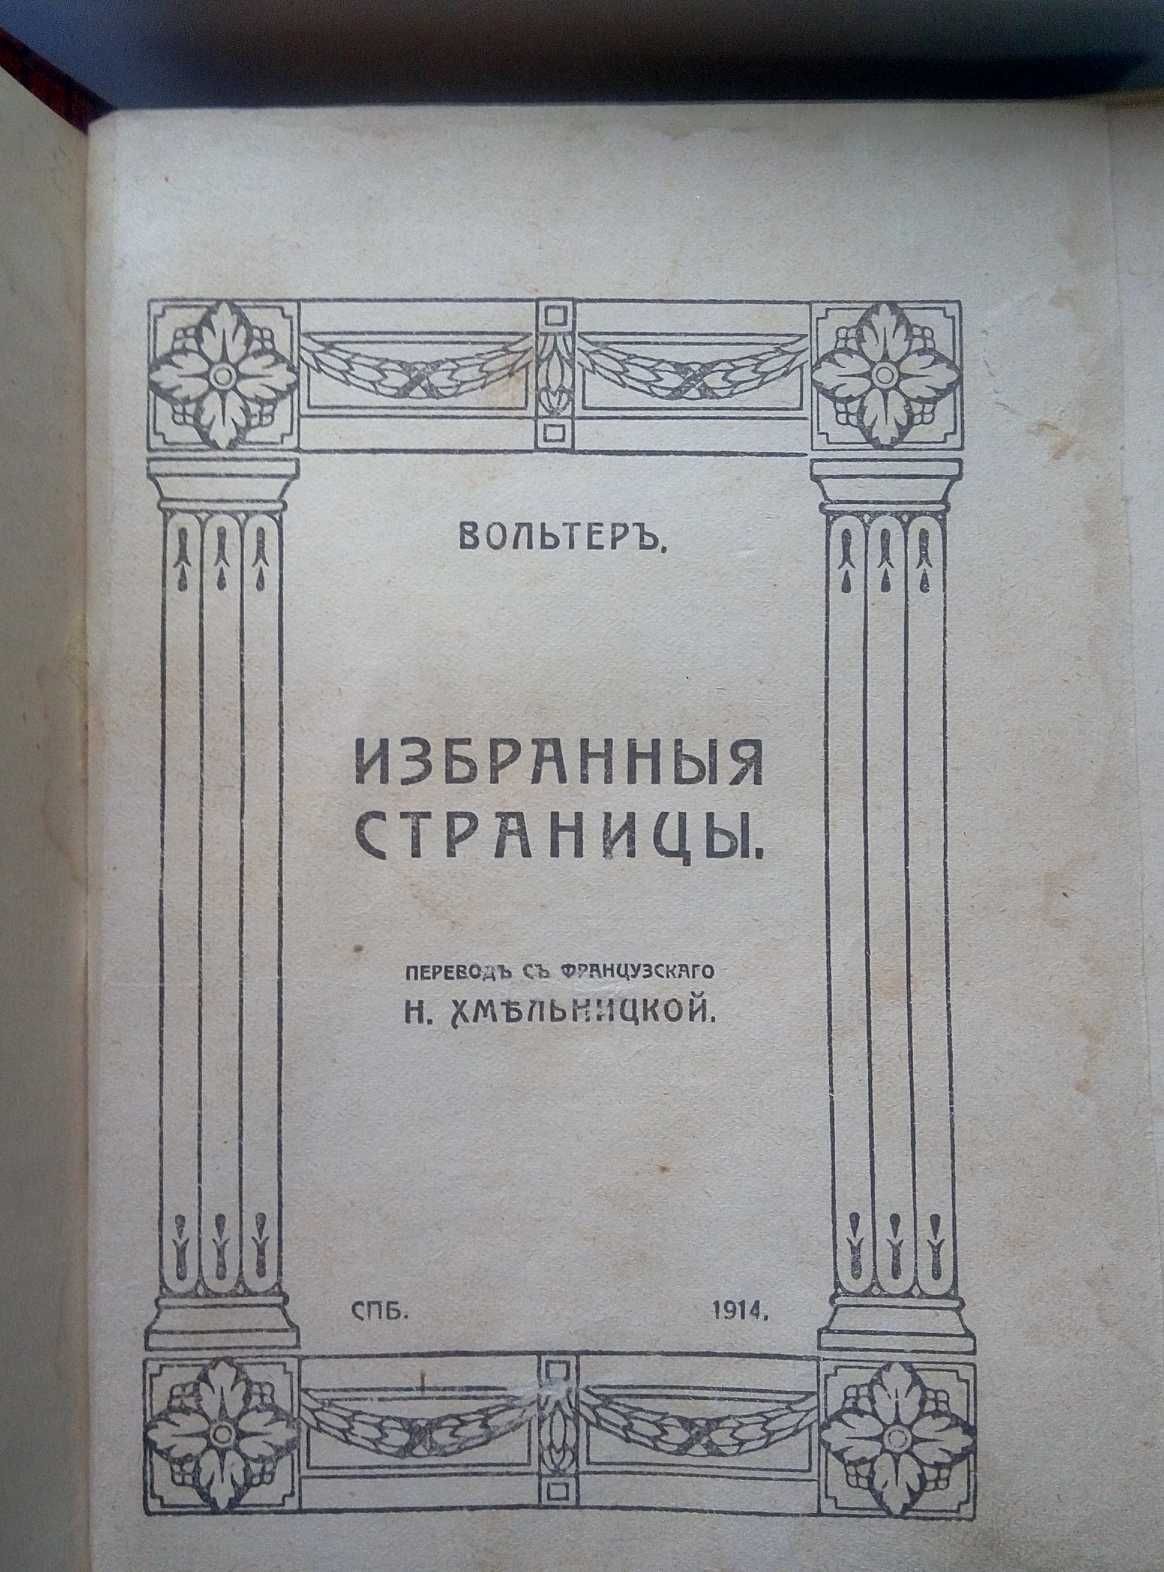 Продам дореволюционное издание 1914 года - Вольтер Избранныя страницы